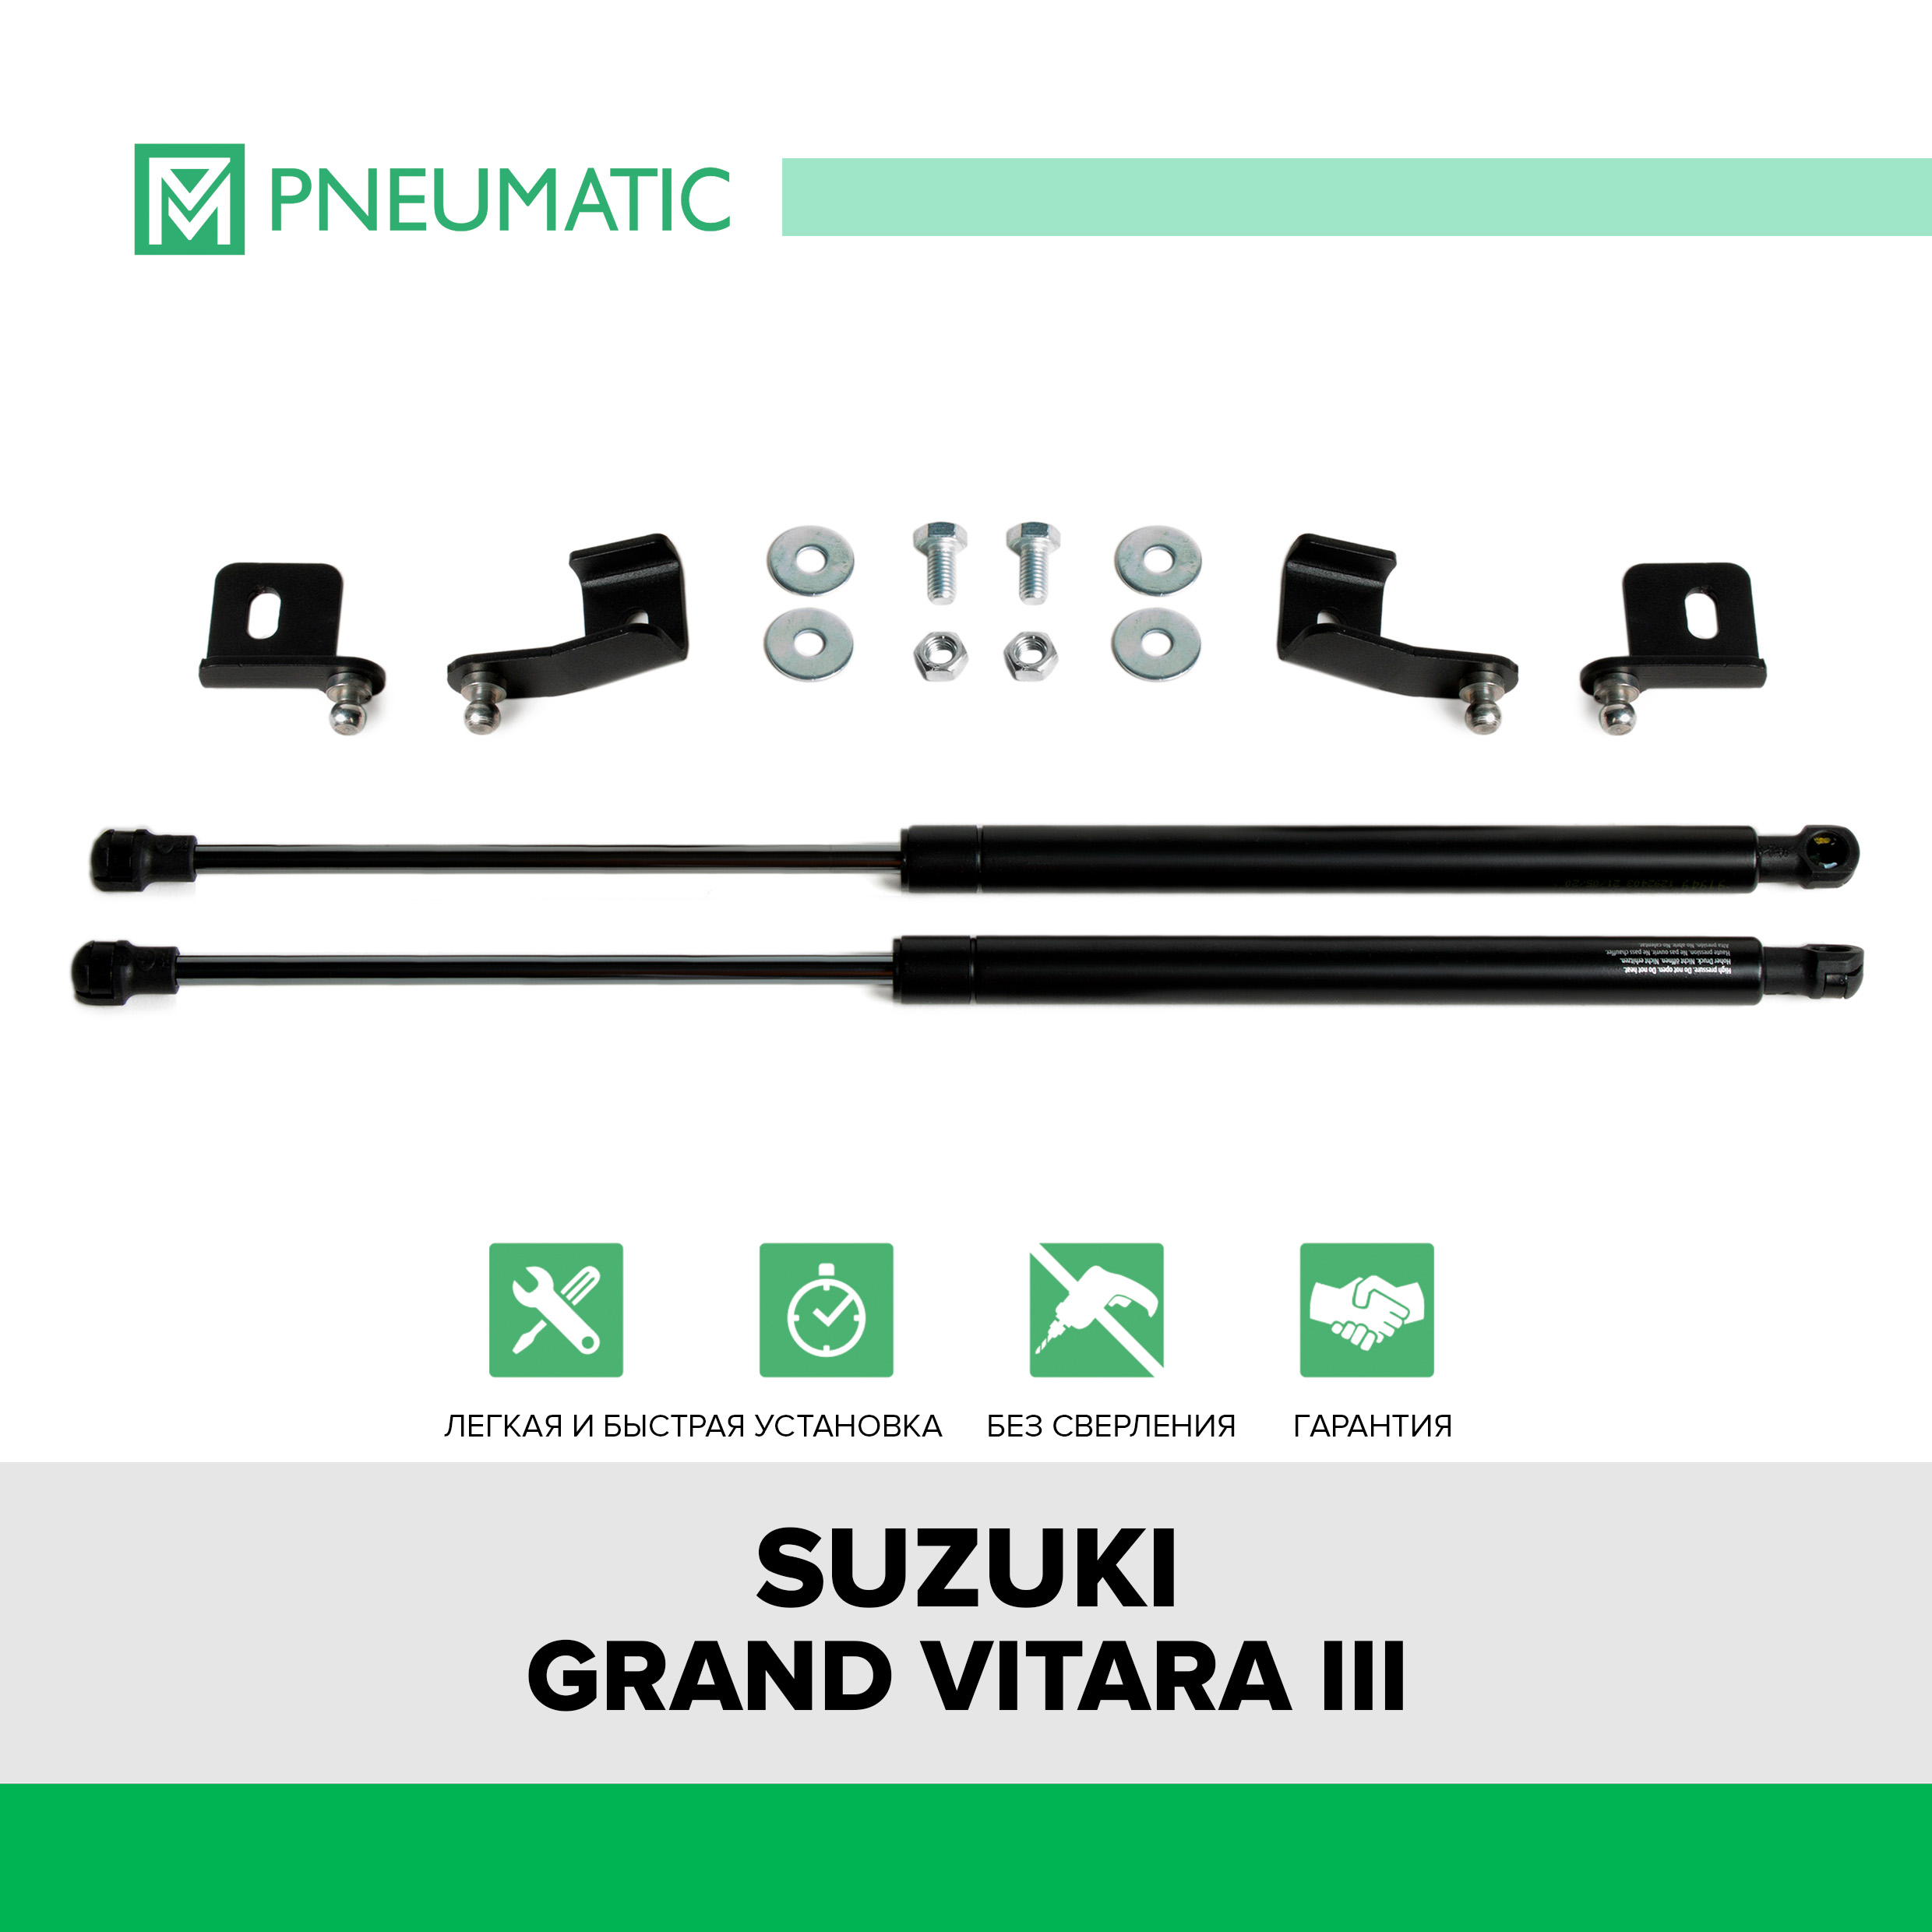 Газовые упоры капота Pneumatic для Suzuki Grand Vitara III 2005-2015, 2 шт., KU-SZ-GV00-00